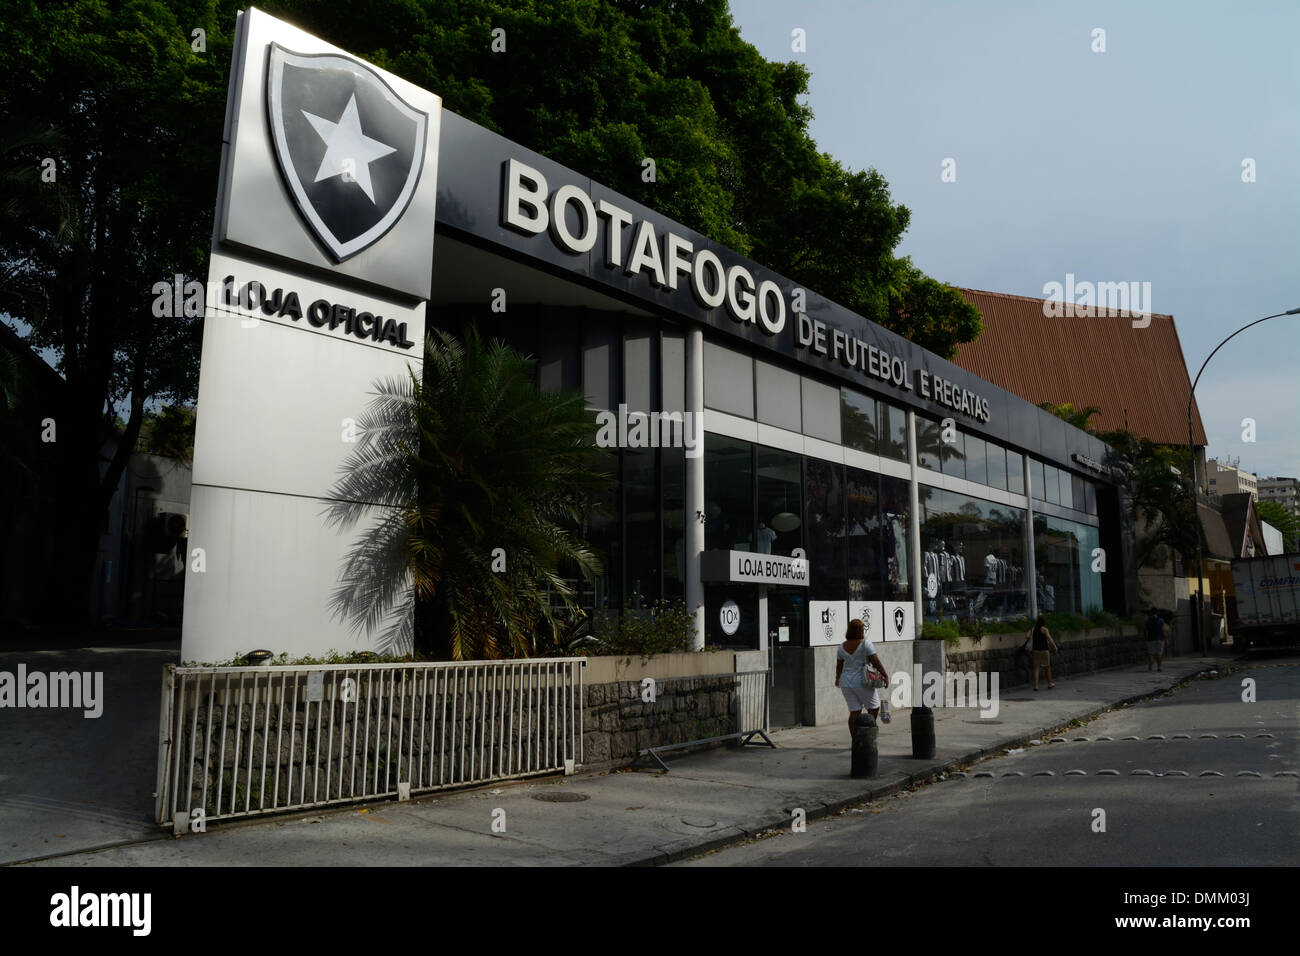 Botafogo de Futebol e Regatas à Rio de Janeiro, Brésil Banque D'Images